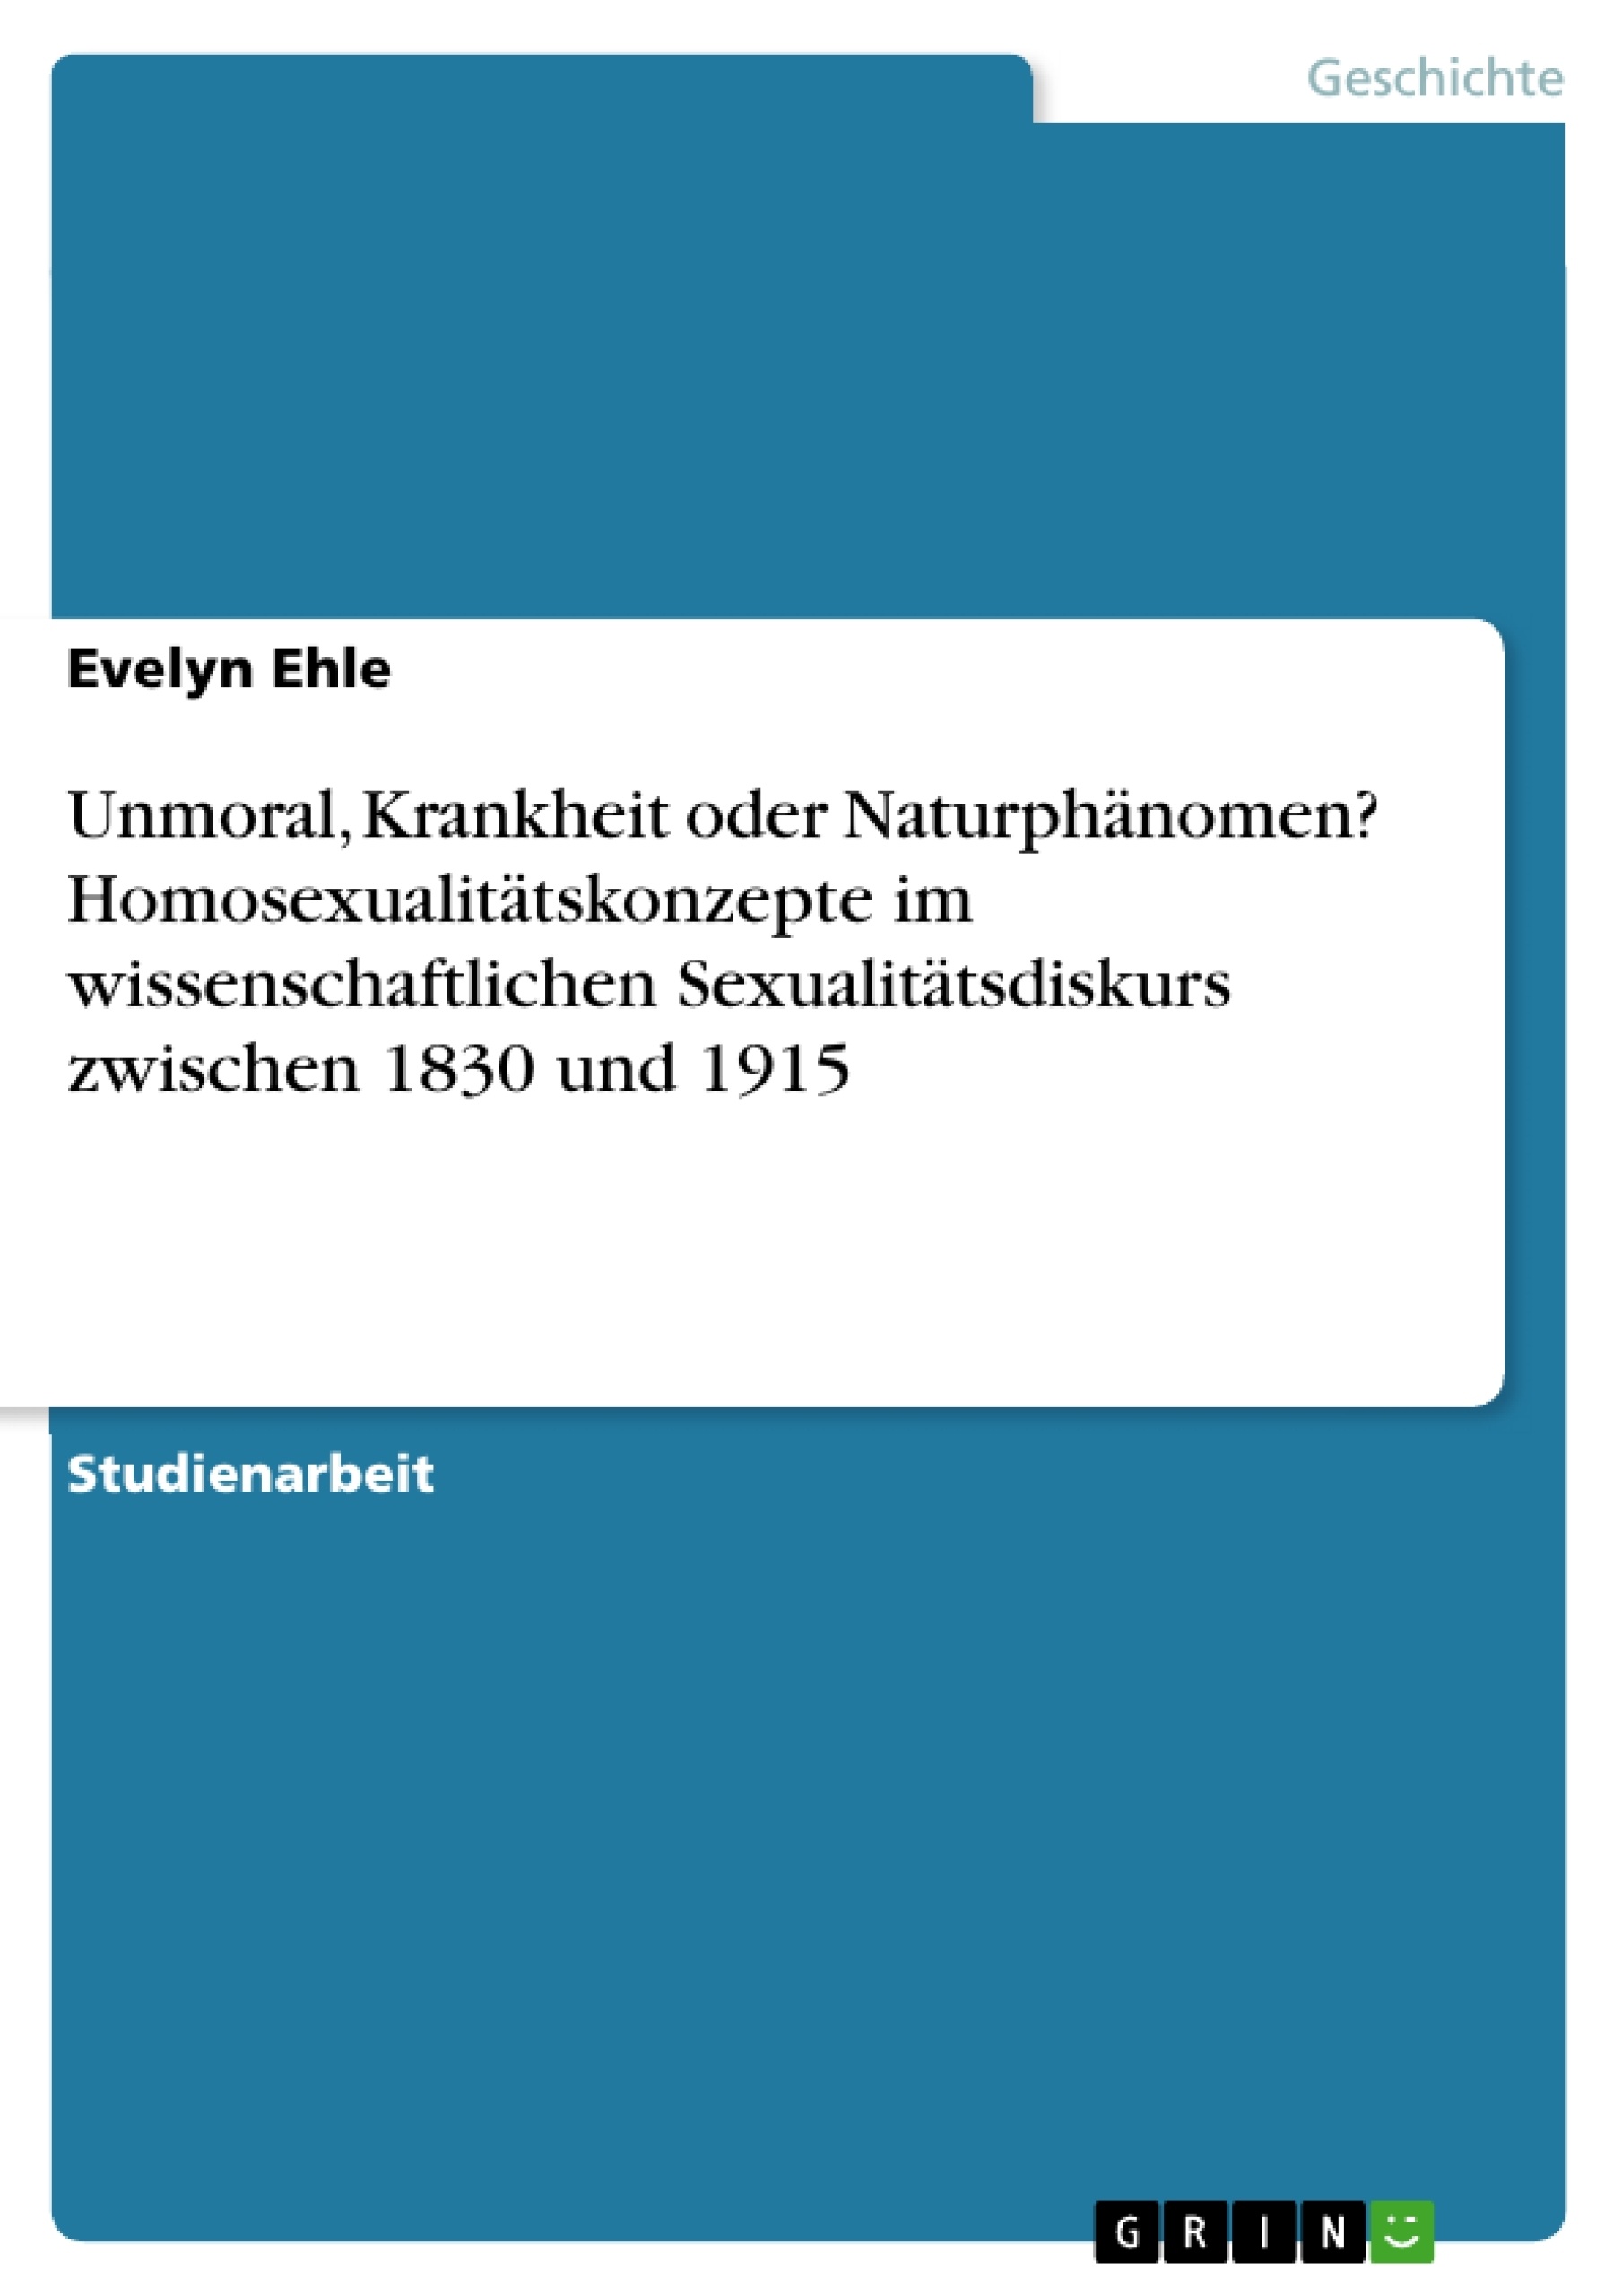 Title: Unmoral, Krankheit oder Naturphänomen? Homosexualitätskonzepte im wissenschaftlichen Sexualitätsdiskurs zwischen 1830 und 1915